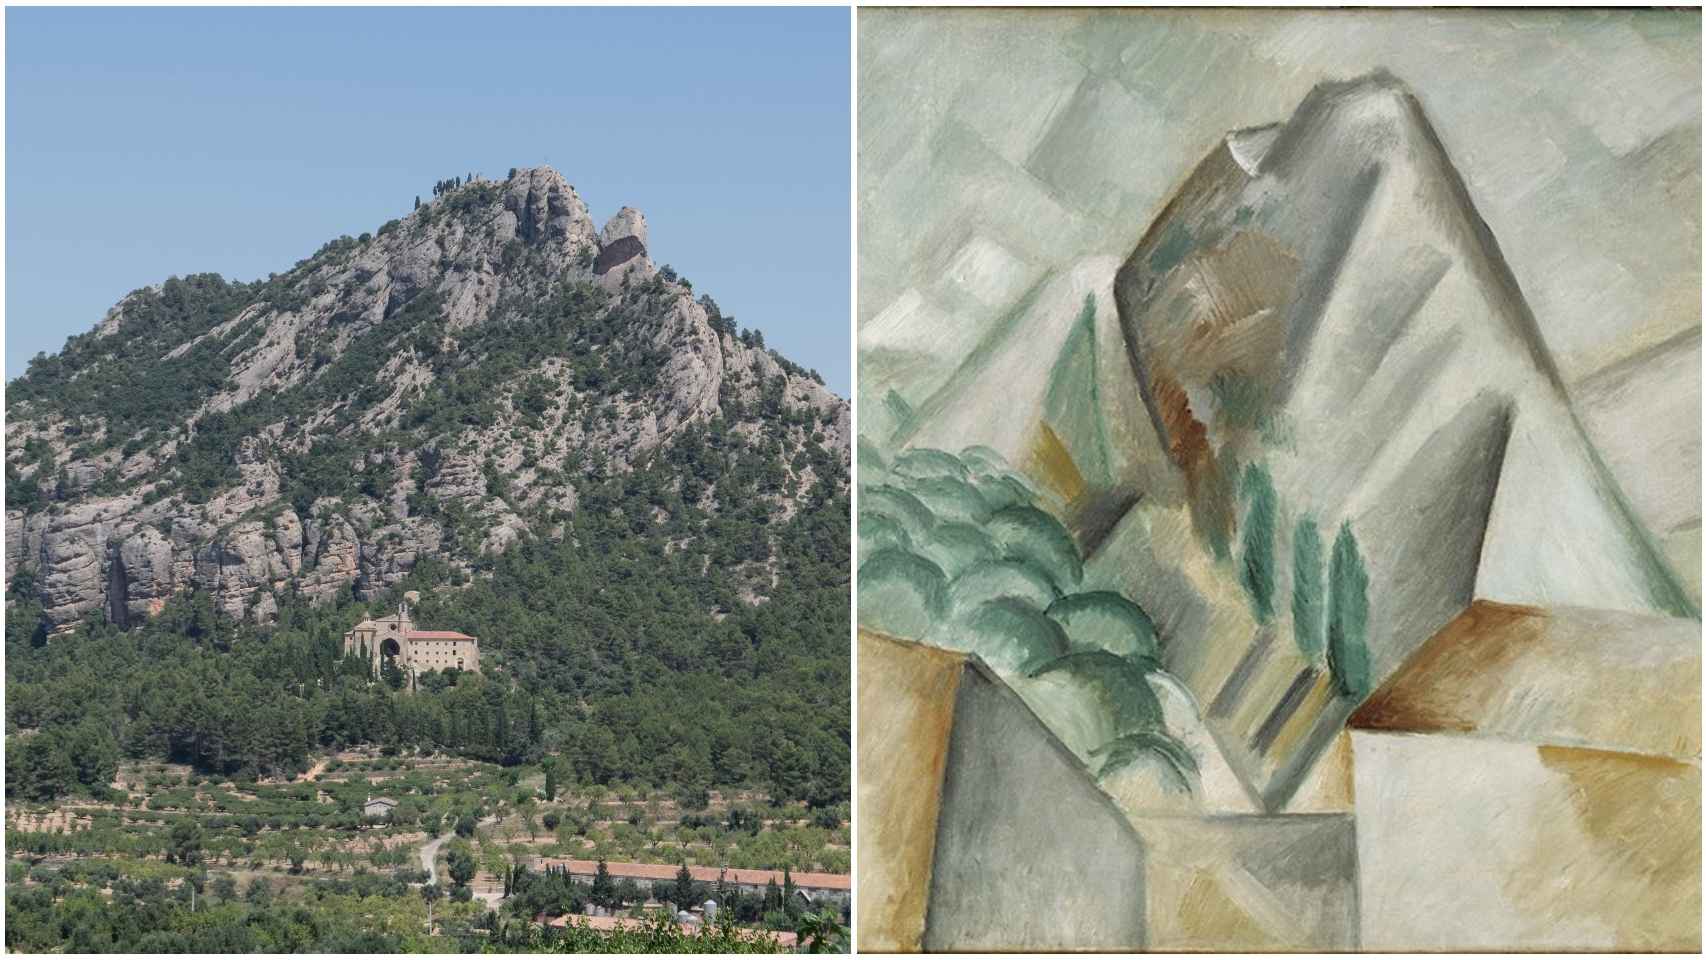 Vista real del monte de Santa Bárbara desde Horta y el cuadro pintado por Picasso.